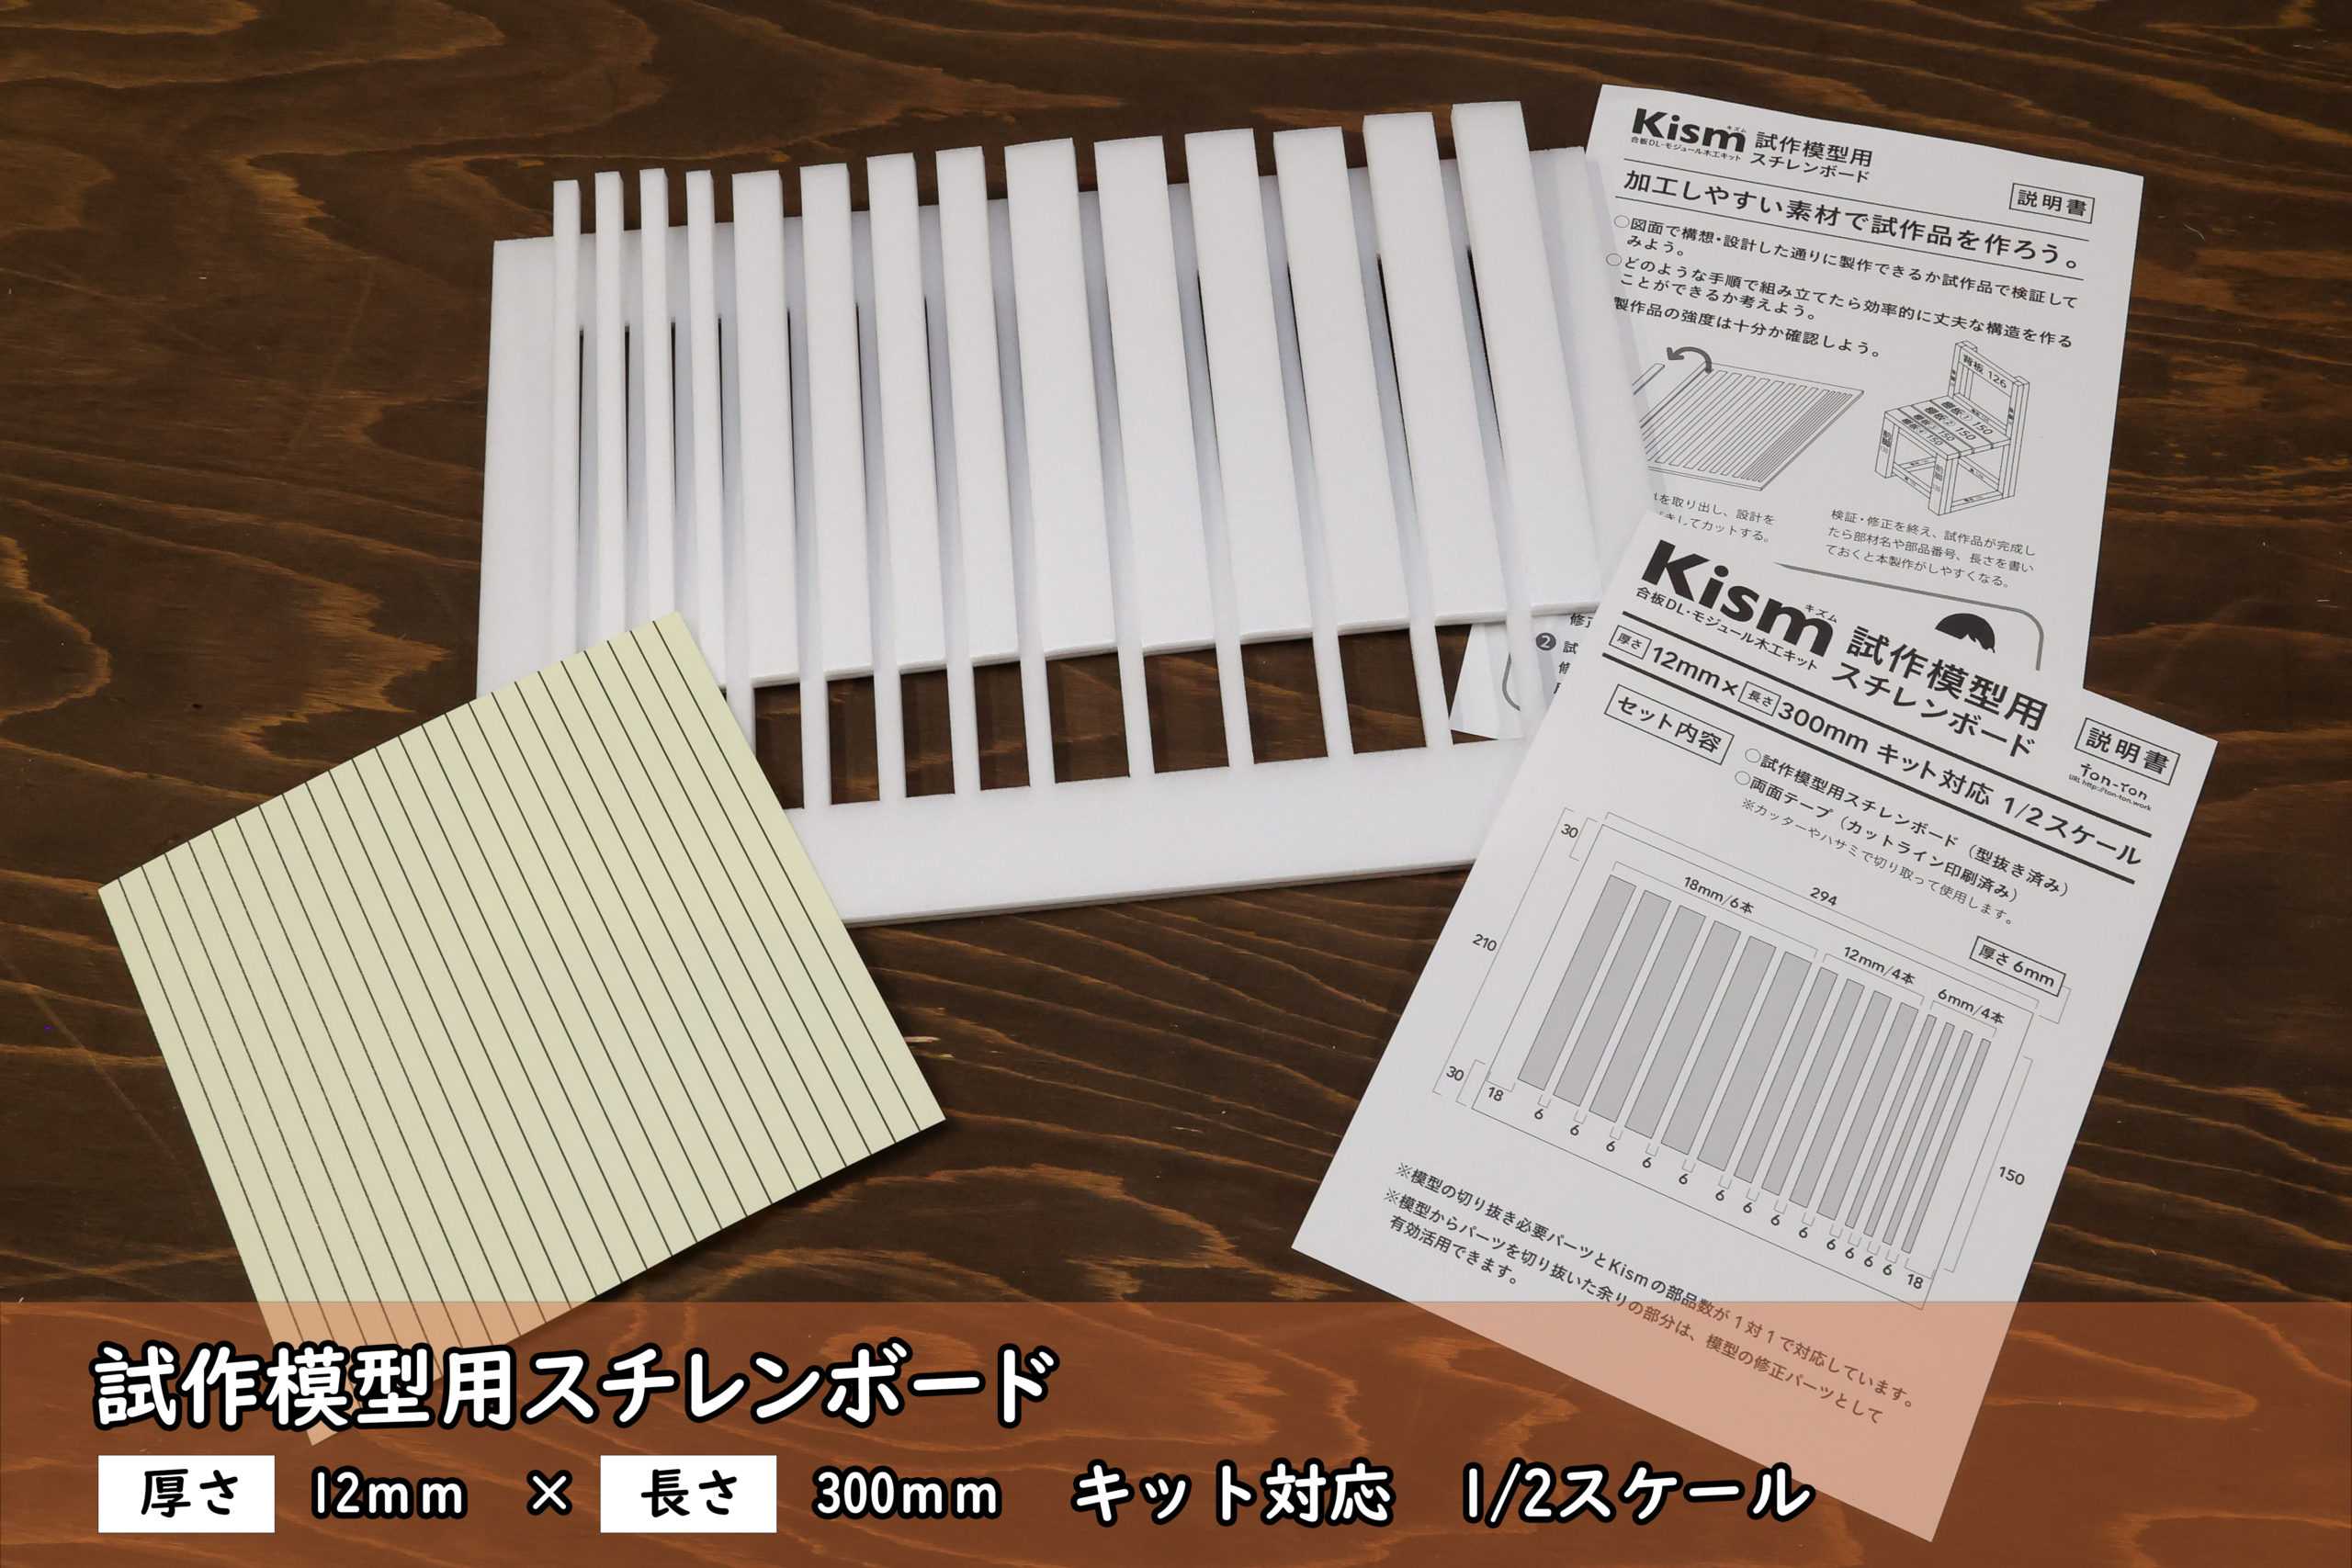 Kismスチレンボード模型製作キット発売